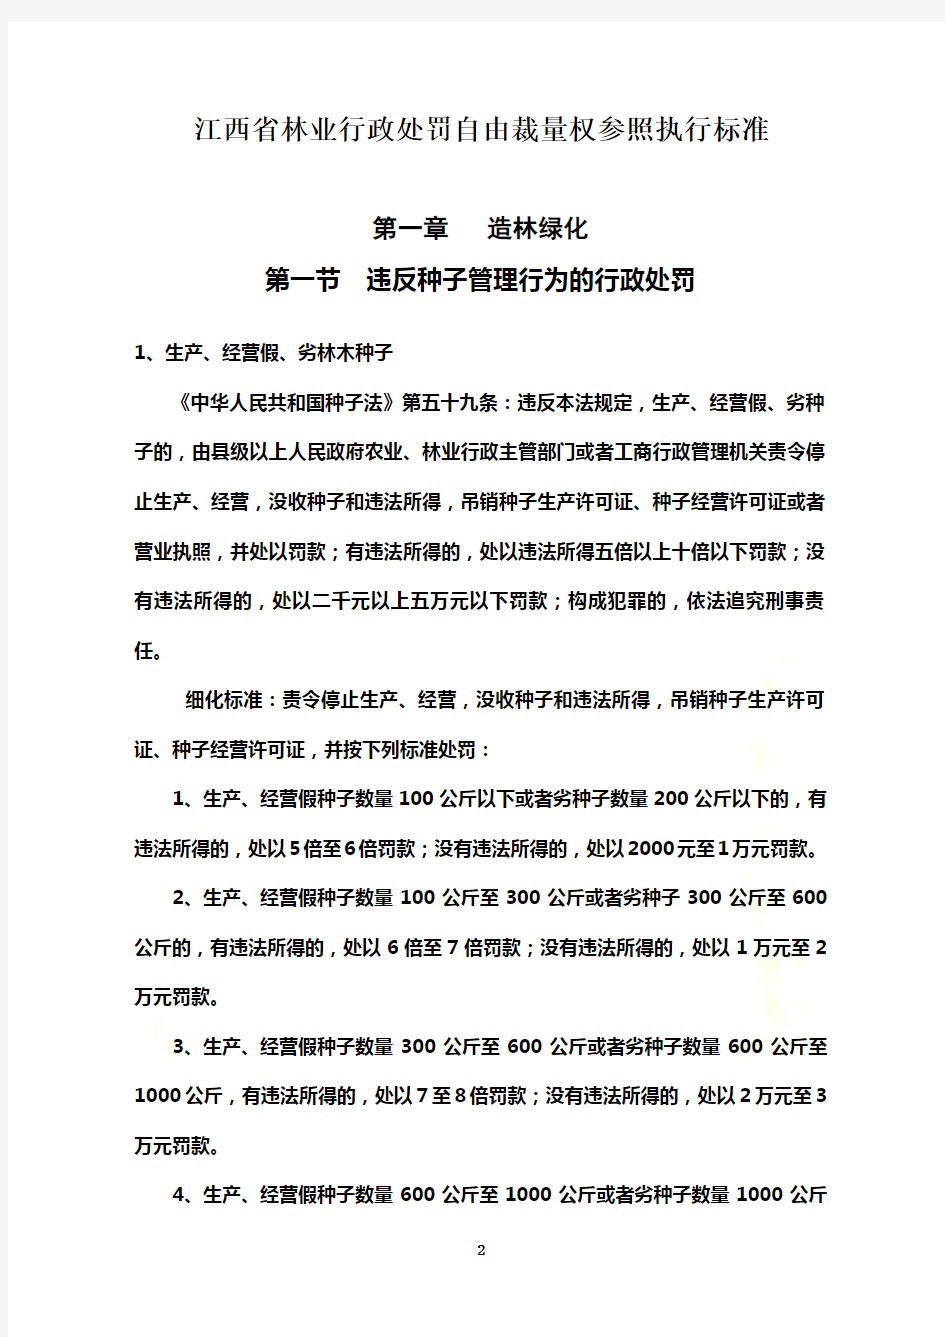 江西省林业行政处罚自由裁量权参照执行标准